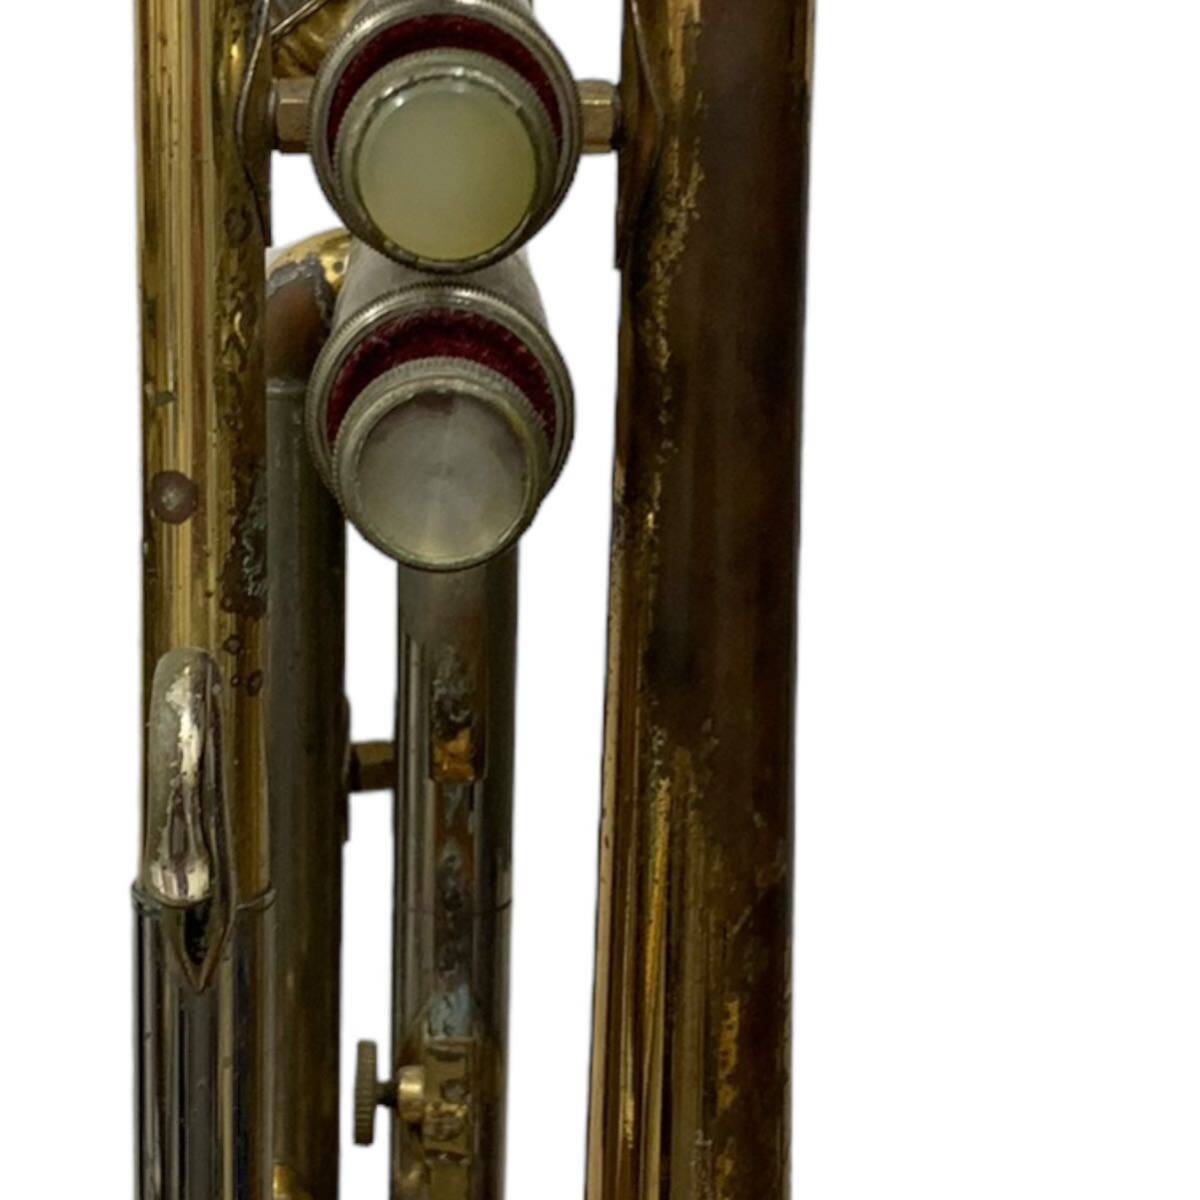 Nikkan Trumpet Imperiale день труба труба imperial подробности неизвестен работоспособность не проверялась музыкальные инструменты 